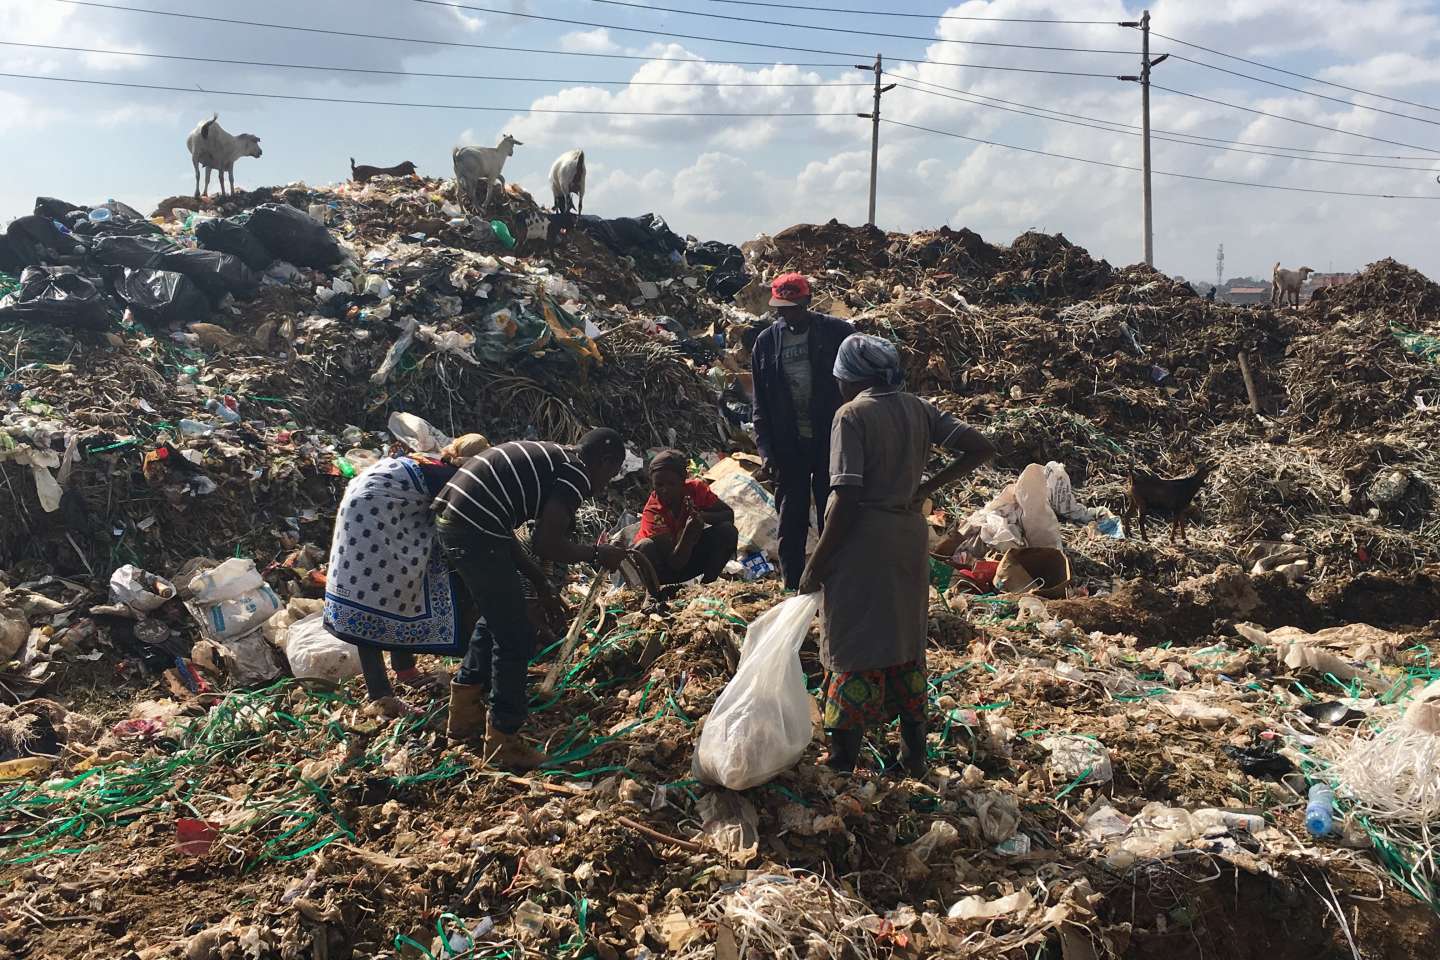 Une fondation dénonce le « déluge de vêtements usagés » contenant du plastique envoyés au Kenya